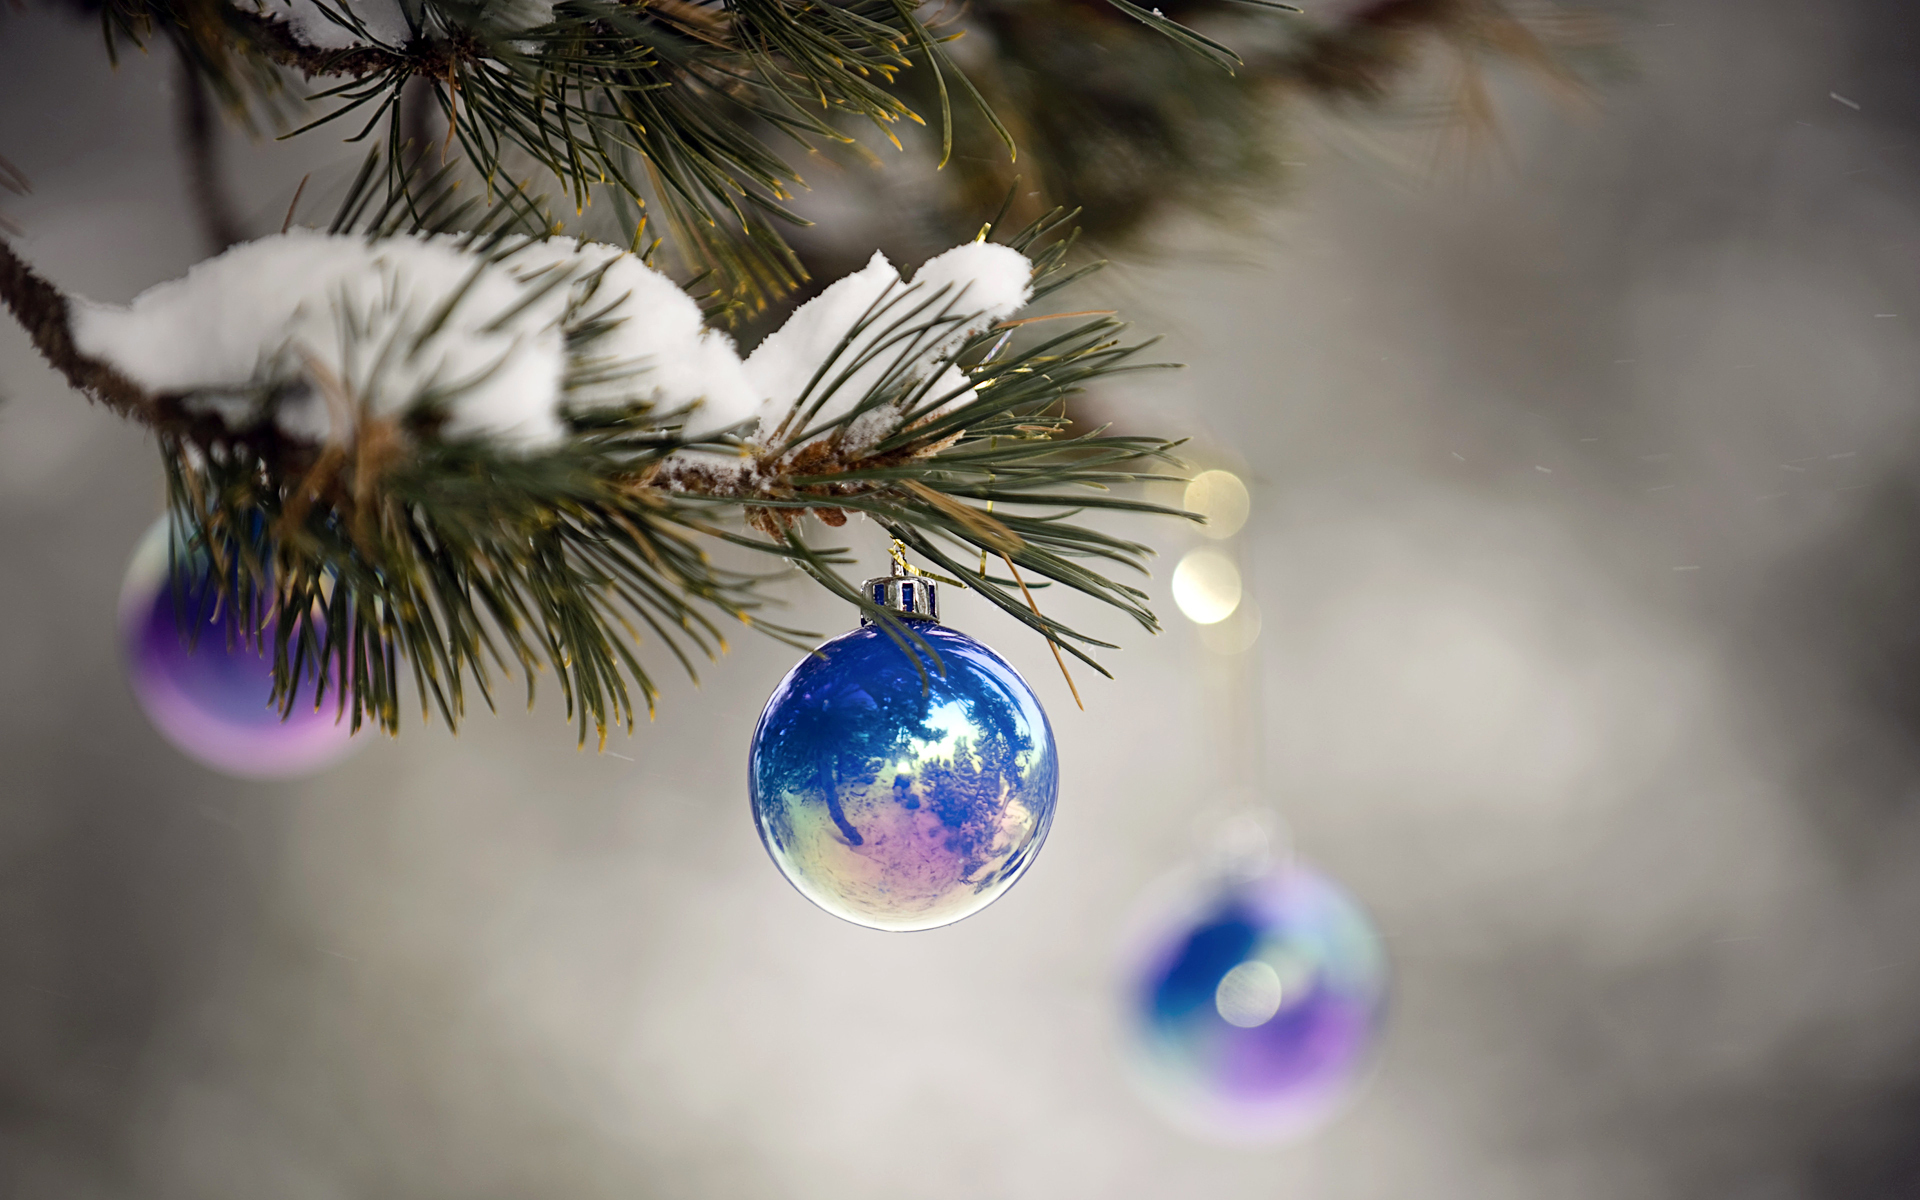 Скачать обои бесплатно Зима, Праздники, Рождество (Christmas Xmas), Новый Год (New Year) картинка на рабочий стол ПК